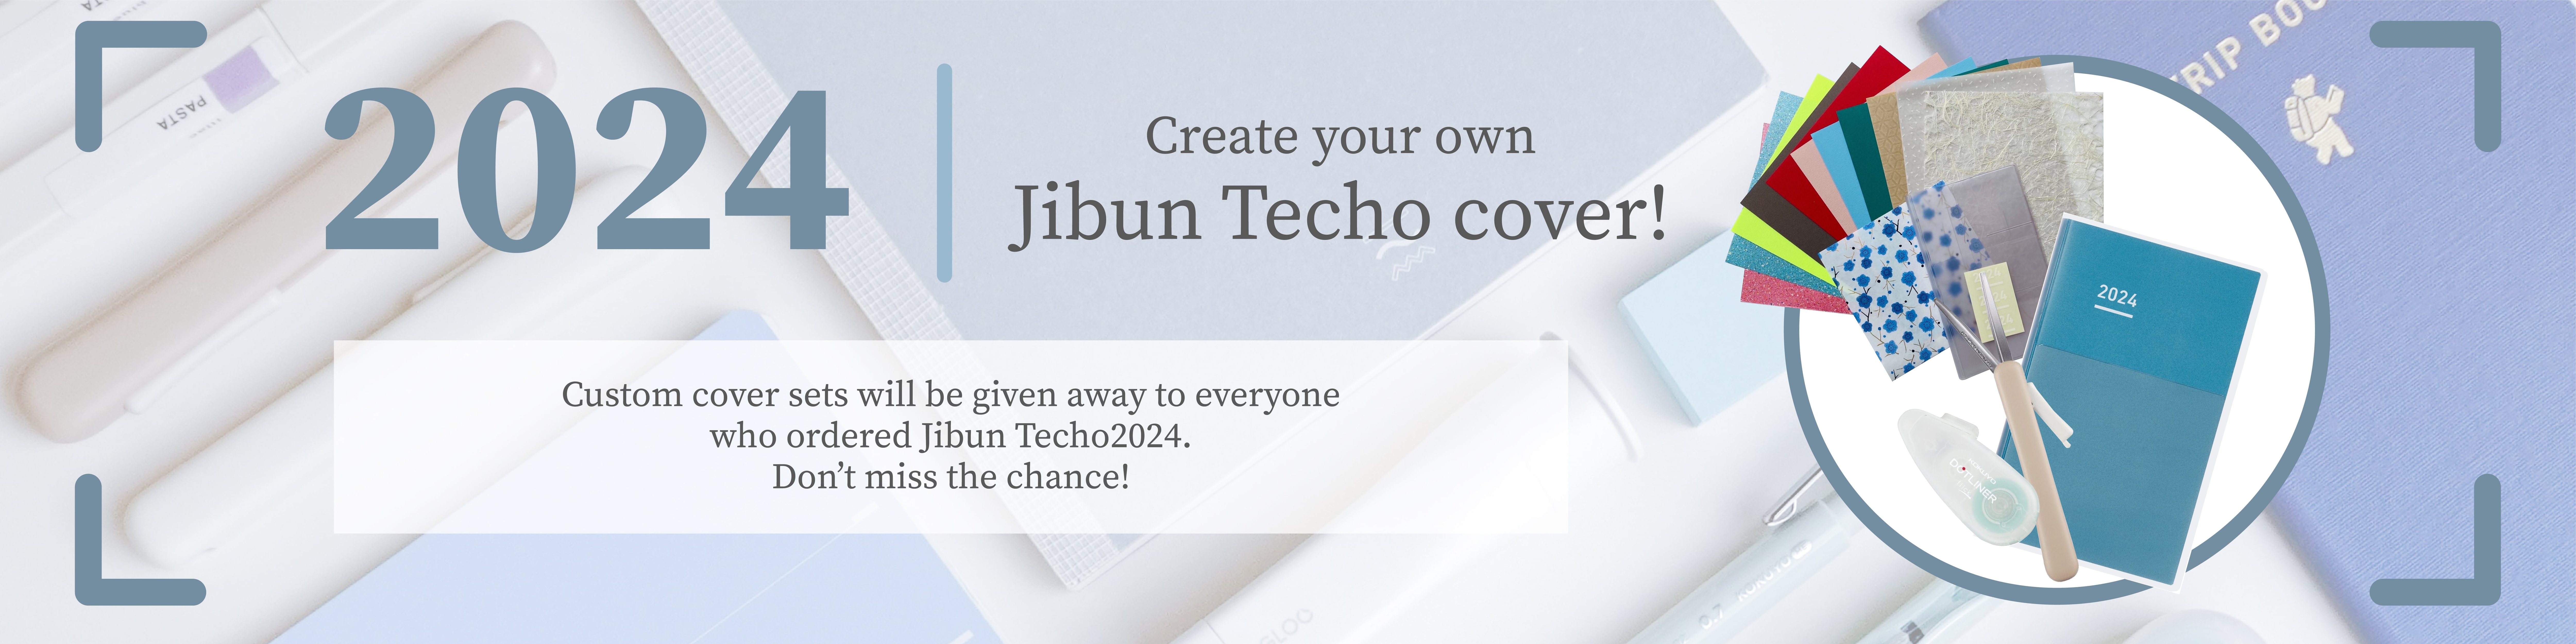 Jibun Techo DAYs banner